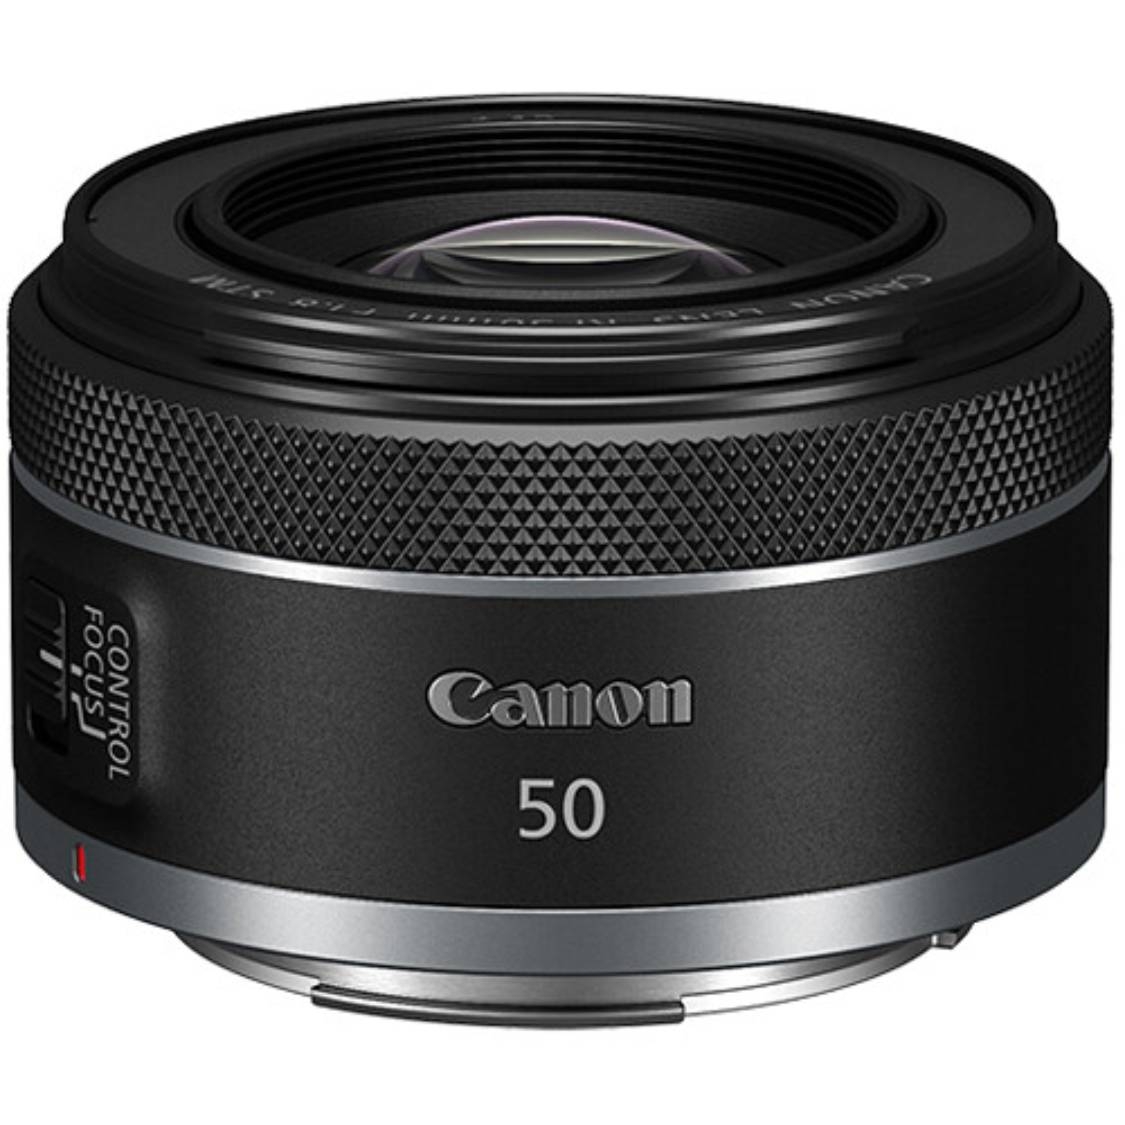 Canon RF 50mm f1.8 STM Lens | McBain Camera